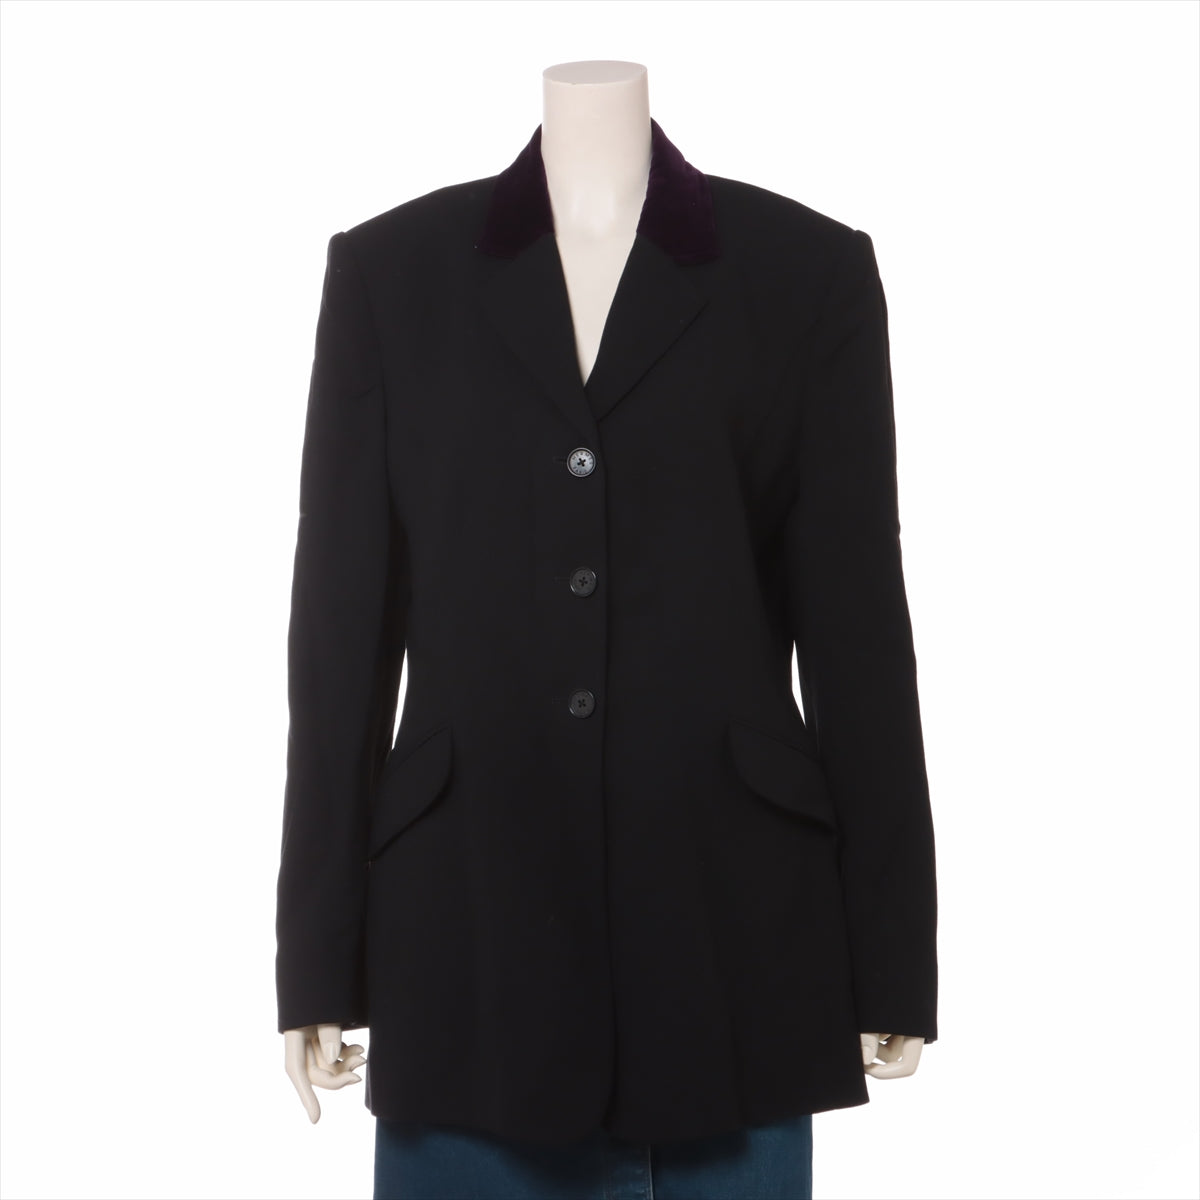 Hermès Cotton & wool Jacket 44 Ladies' Black